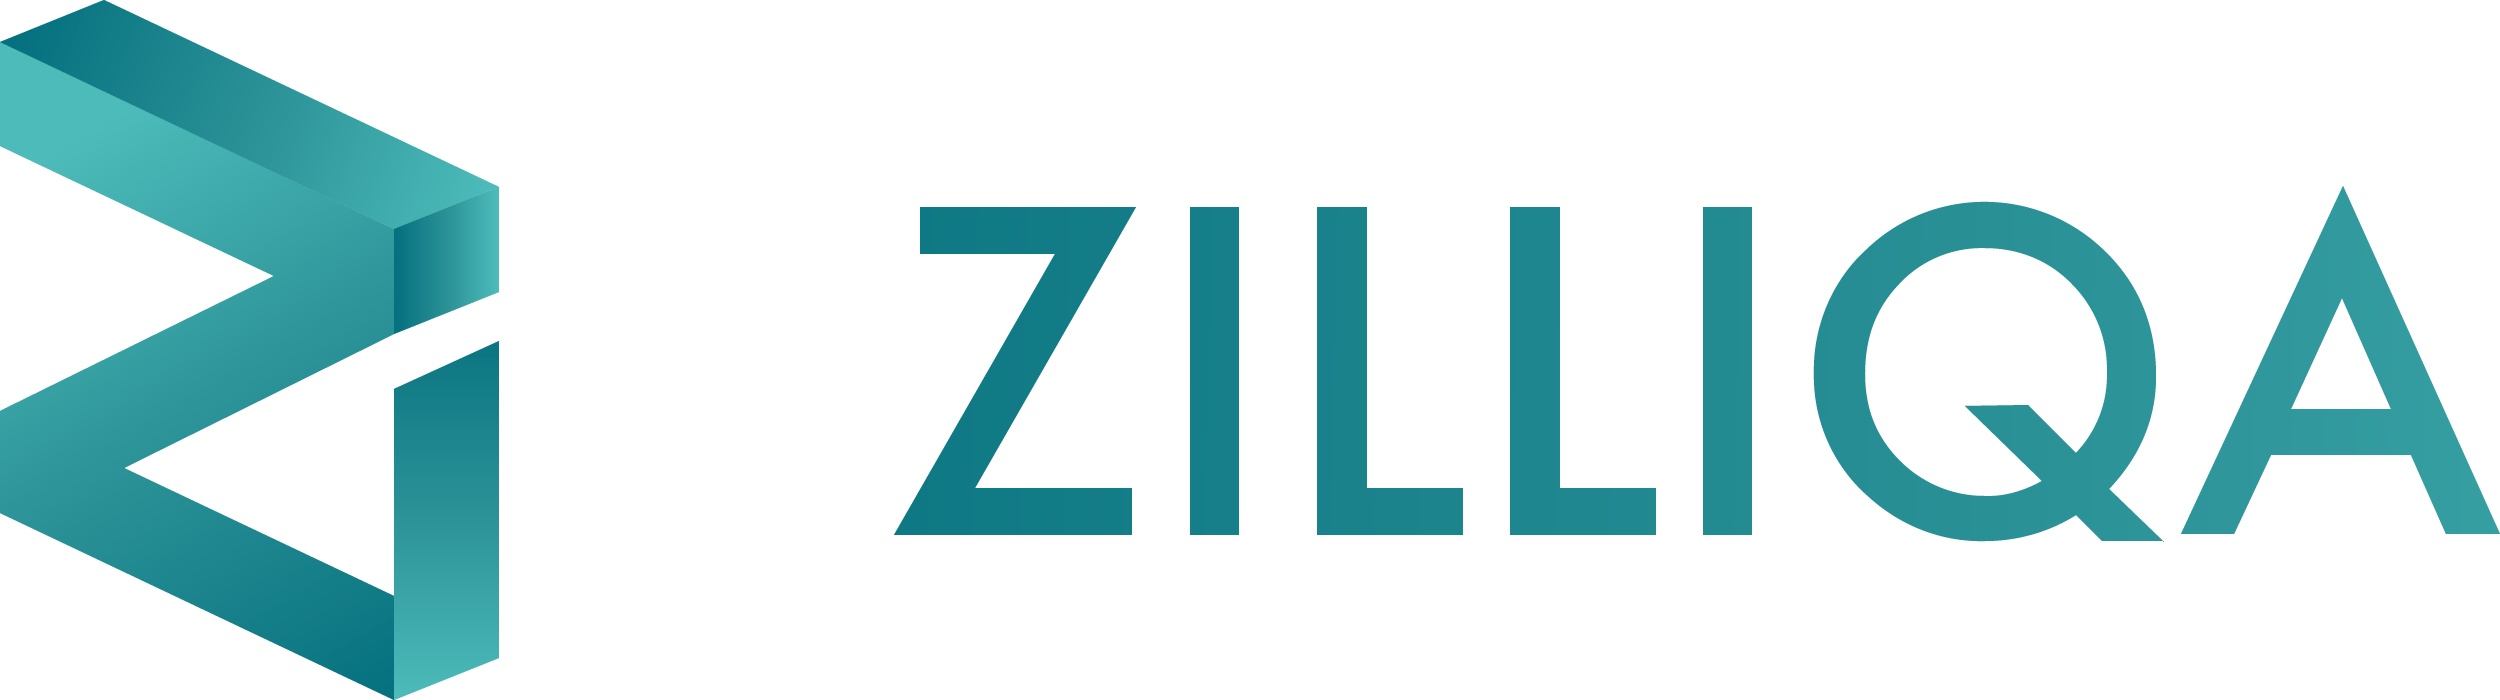 Logo: Zilliqa